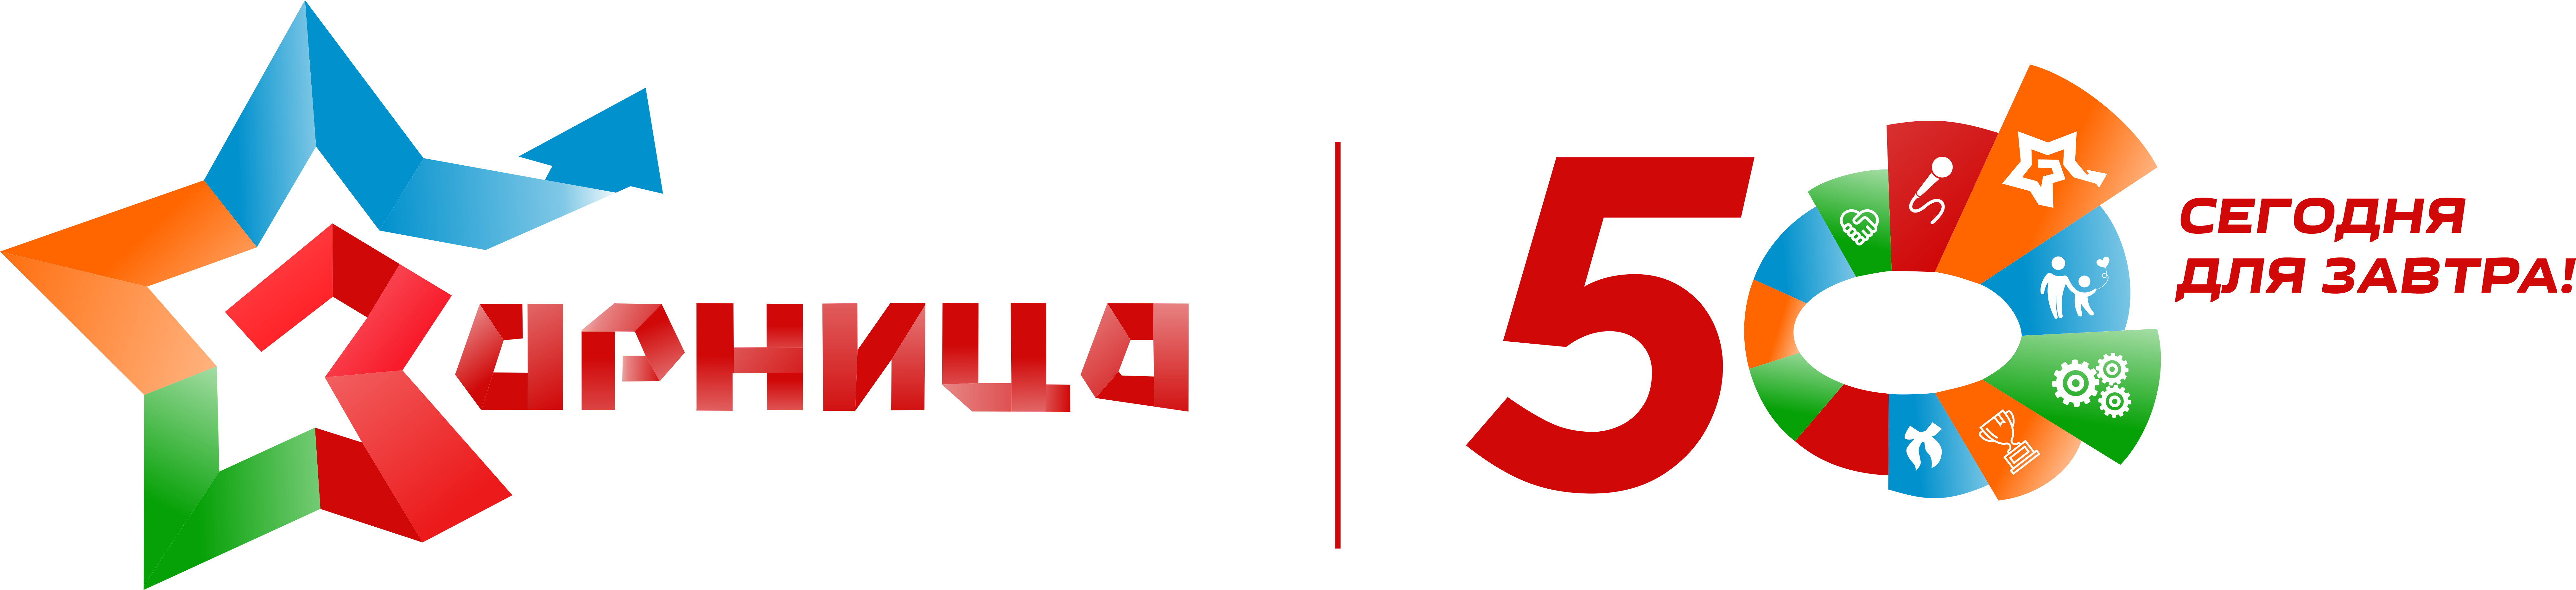 Логотип ДЕТСКИЙ ЗАГОРОДНЫЙ ОЗДОРОВИТЕЛЬНЫЙ ЛАГЕРЬ ЗАРНИЦА